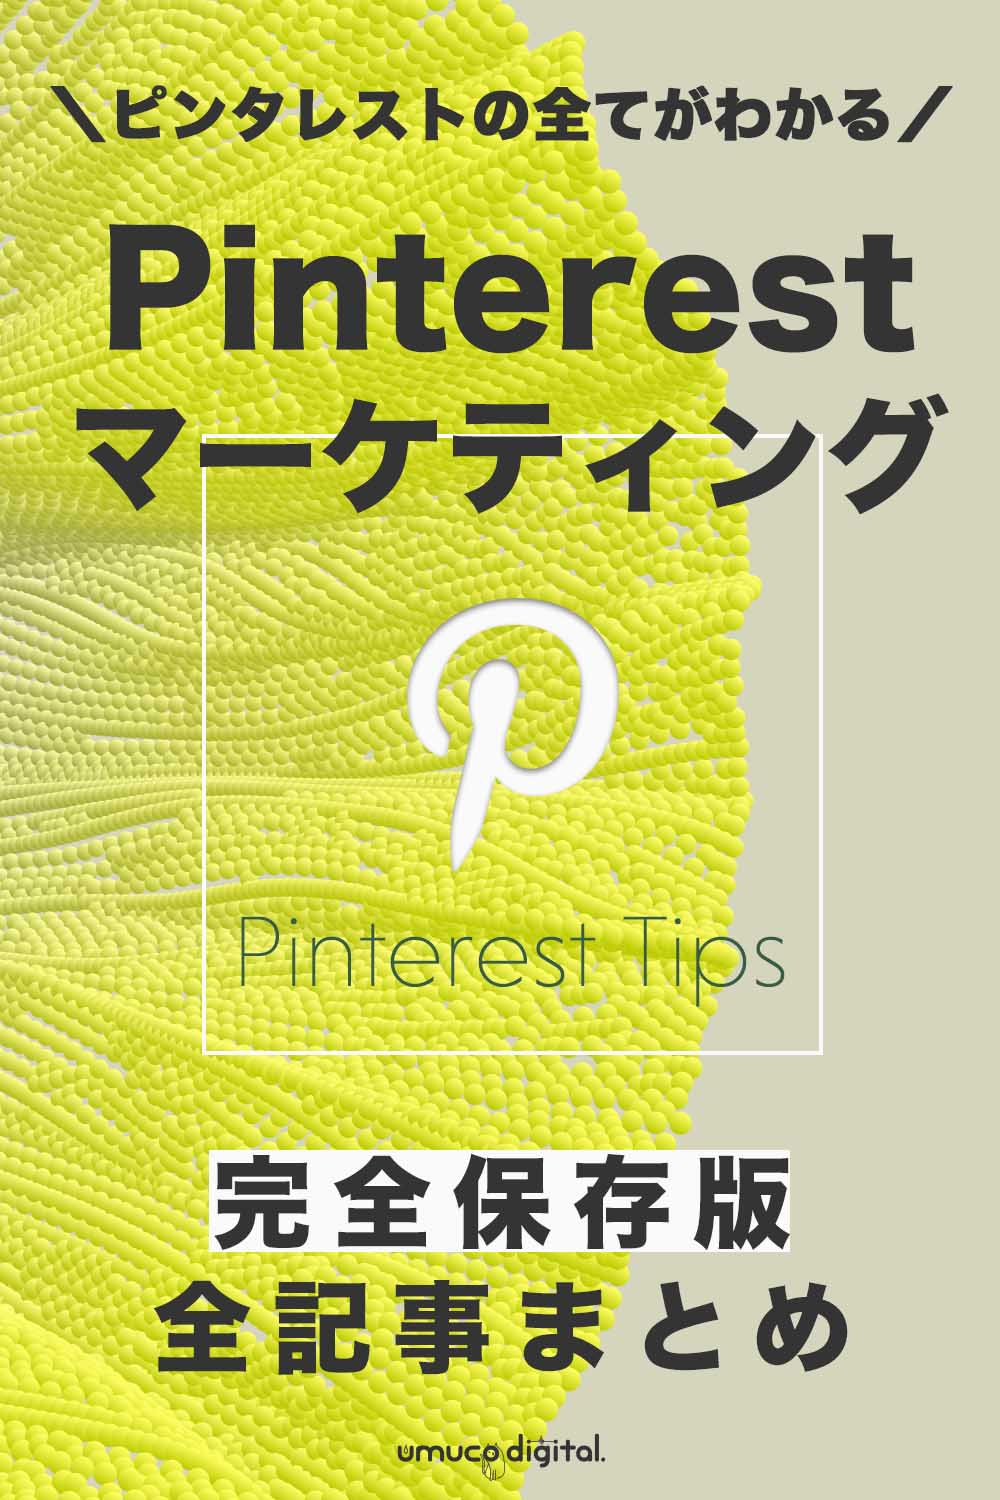 完全保存版 13記事まとめ Pinterest ピンタレスト とは 登録 使い方 集客 運用までの方法を完全解説 Umuco Digital うむ子デジタル